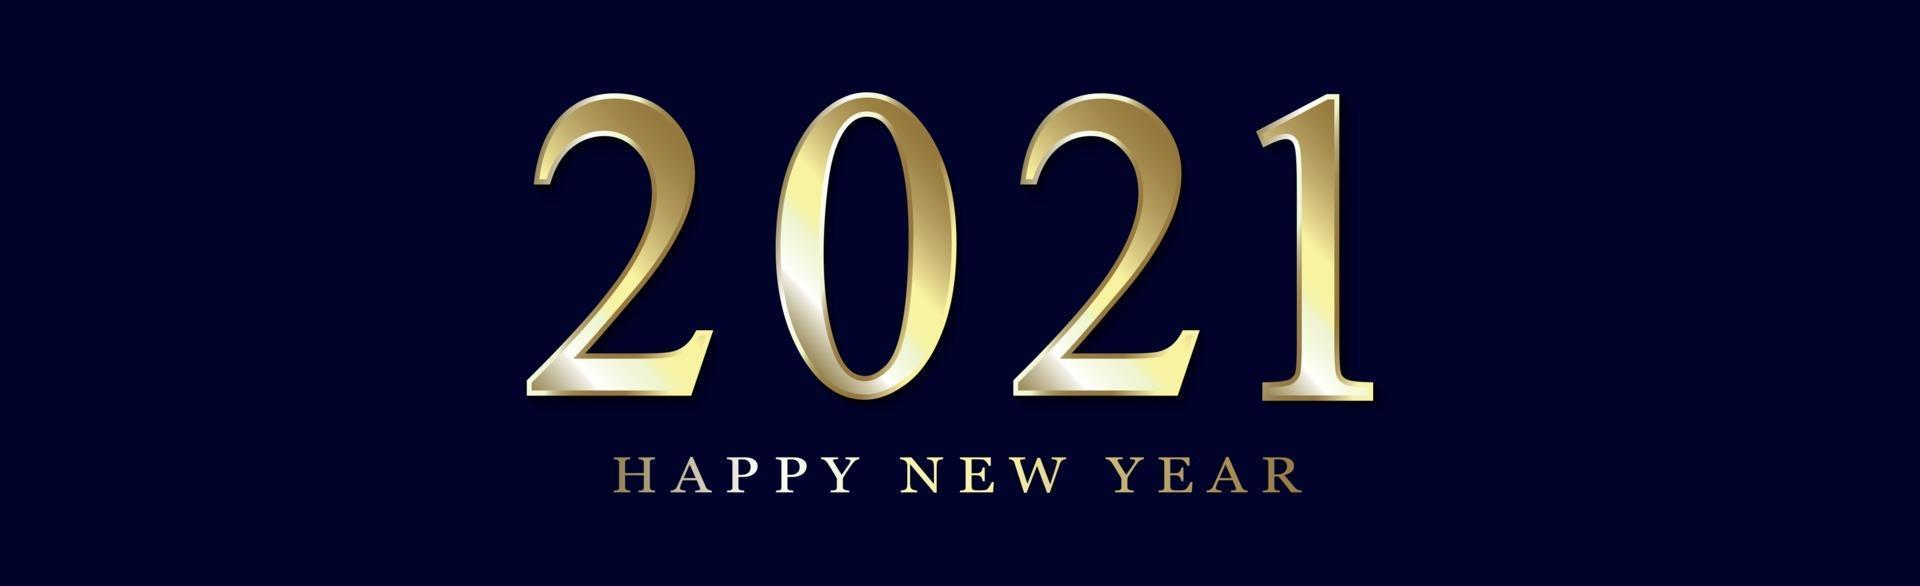 golden numeros 2021 año nuevo deseos - ilustración vector